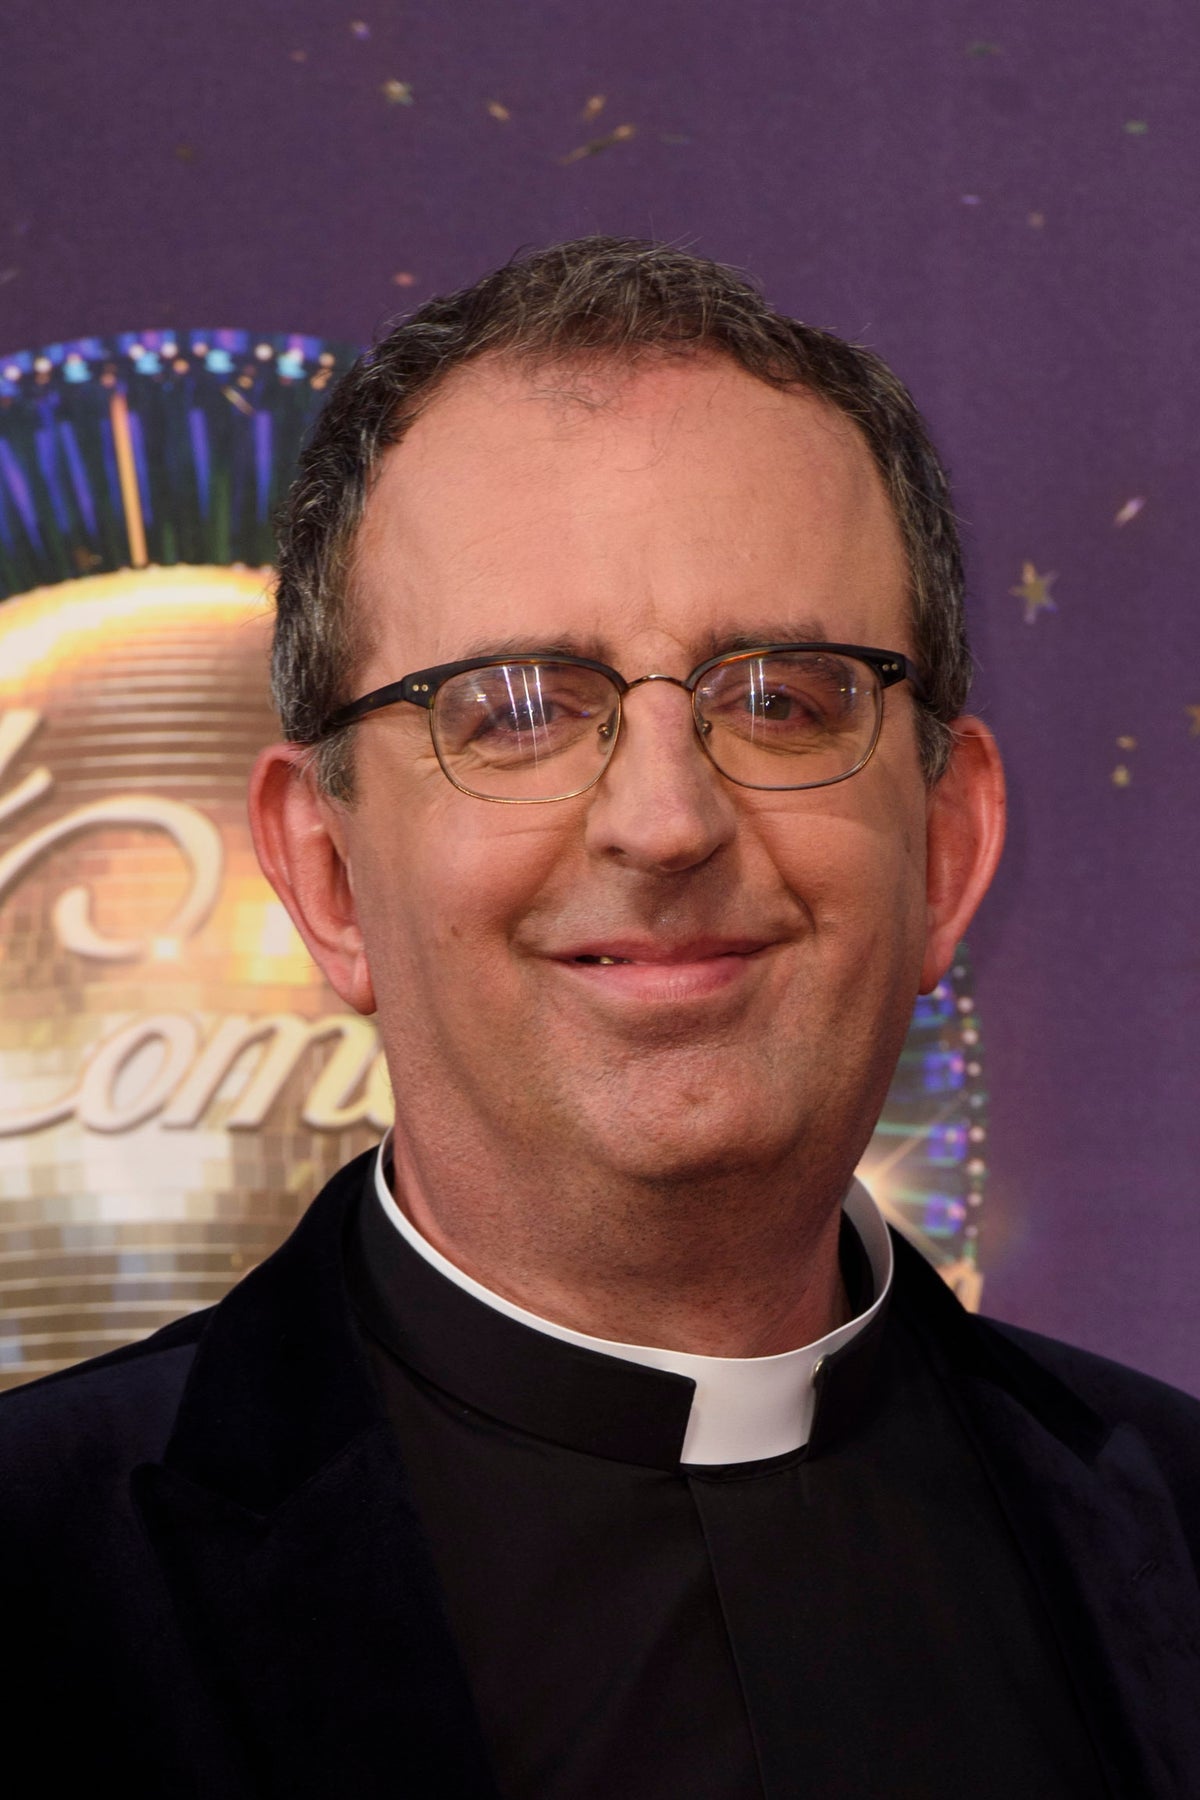 TV vicar Richard Coles reveals shock at ‘hell raiser’ late partner’s obscene joke about senior cleric